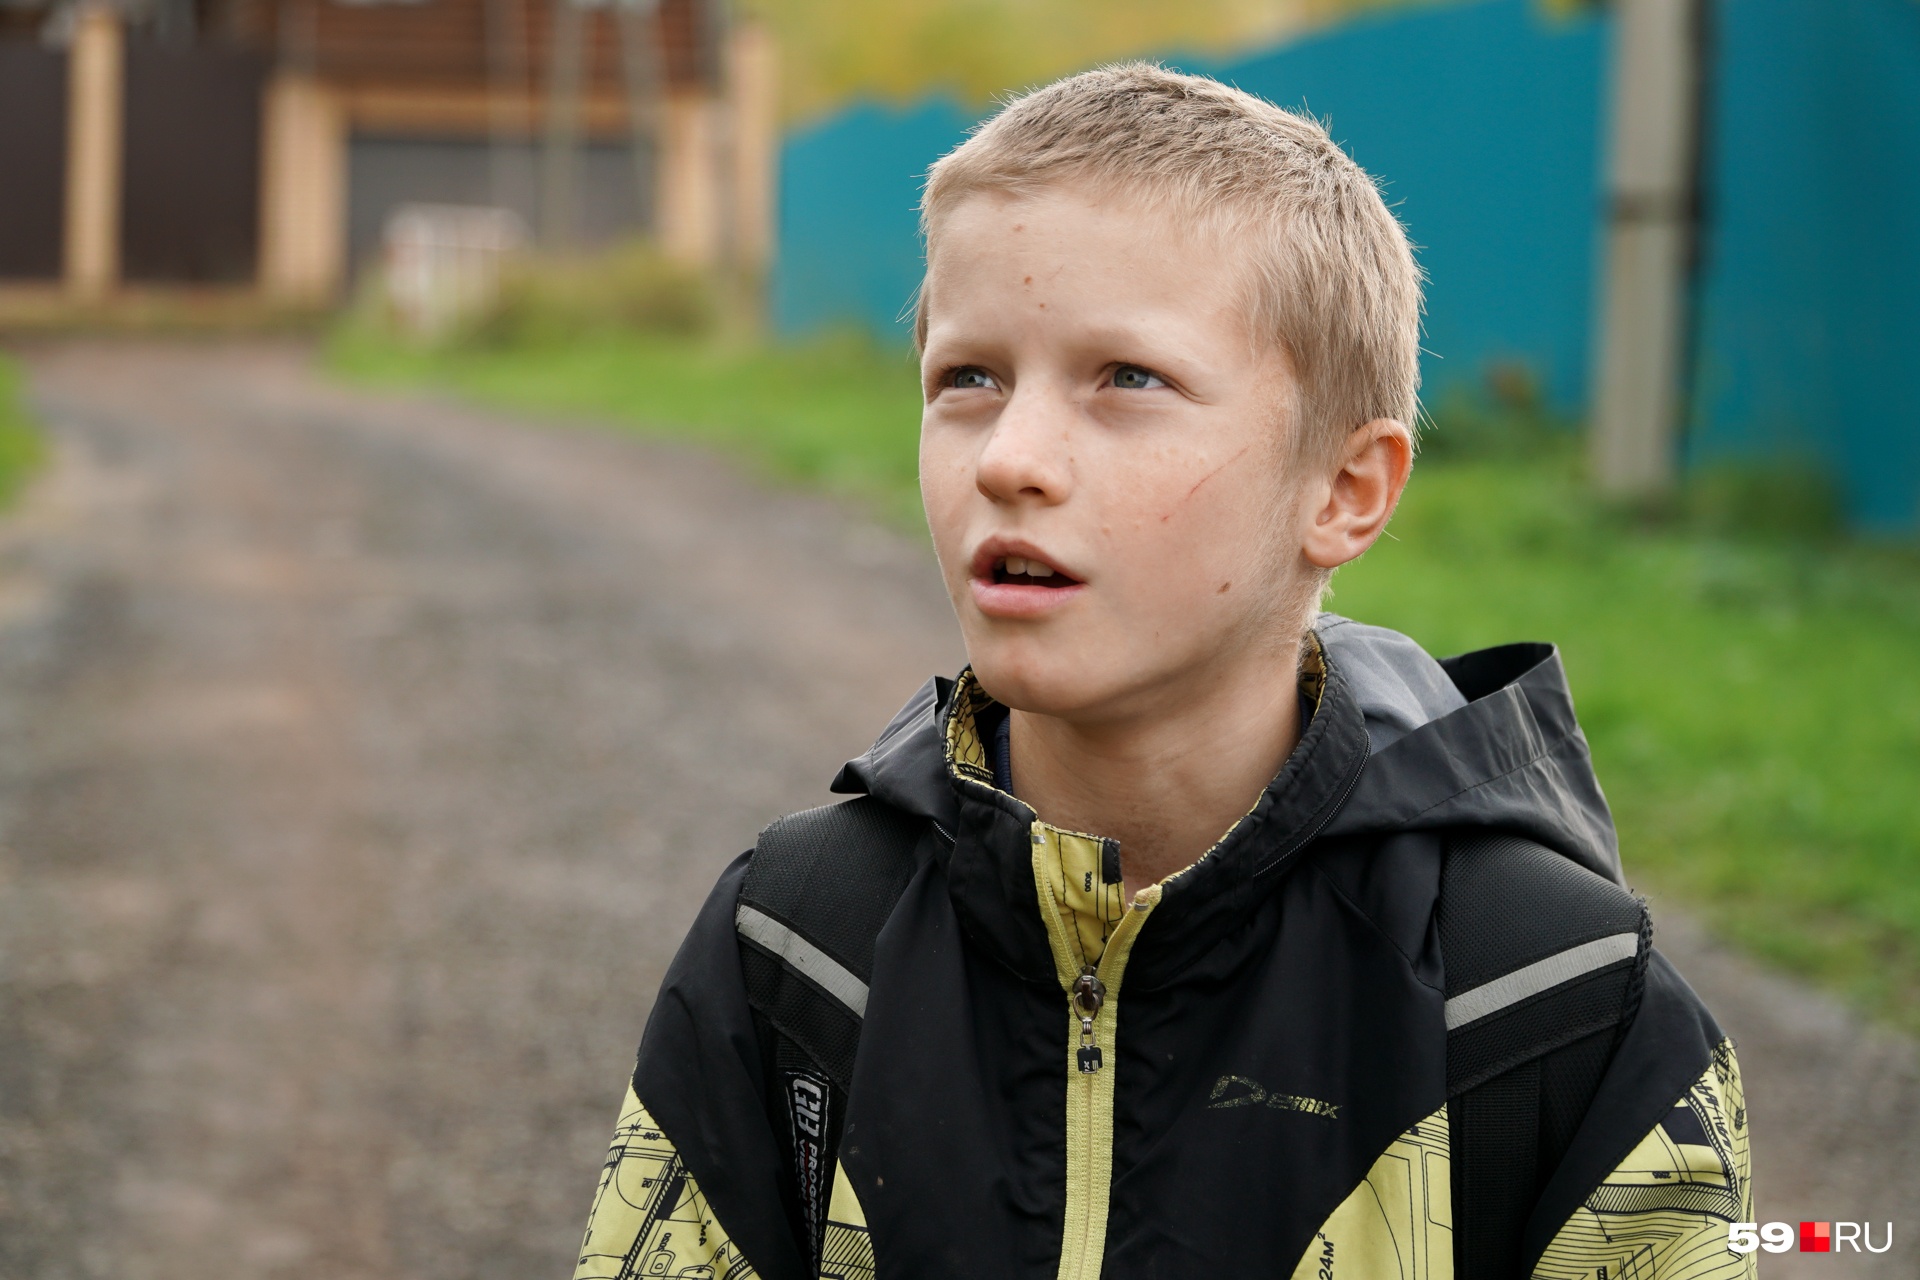 Мальчик из Прикамья идет в школу один 5 км по темной проселочной дороге. Кто виноват и что делать?